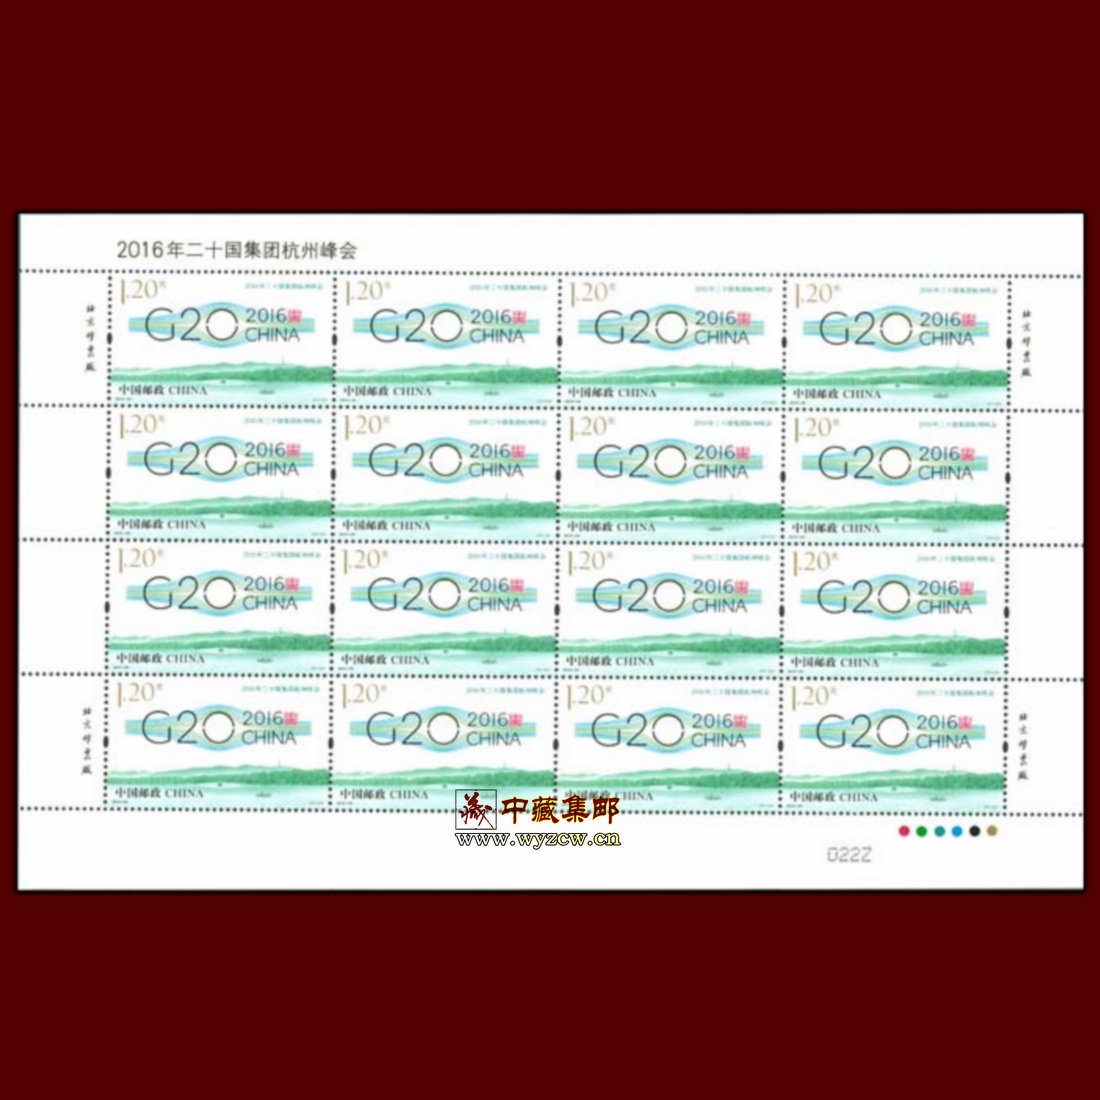 2016-25《2016年二十国集团杭州峰会》G20纪念邮票完整大版张一版